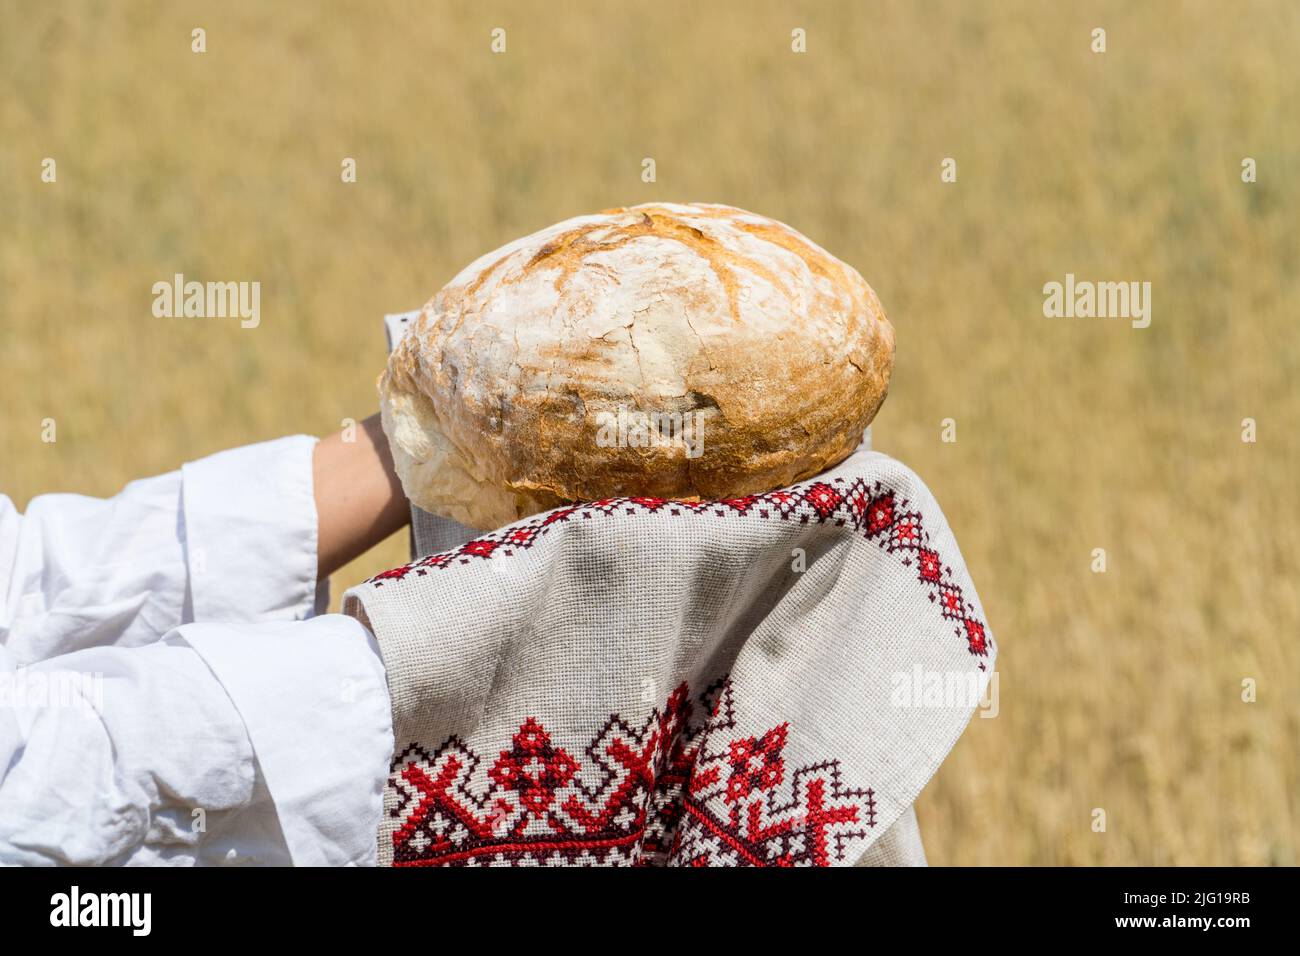 Des mains de femmes tenant un pain cuit maison au-dessus de sa tête sur un ciel bleu d'été dans un champ de blé. Concept d'hospitalité et d'approvisionnement alimentaire. Banque D'Images